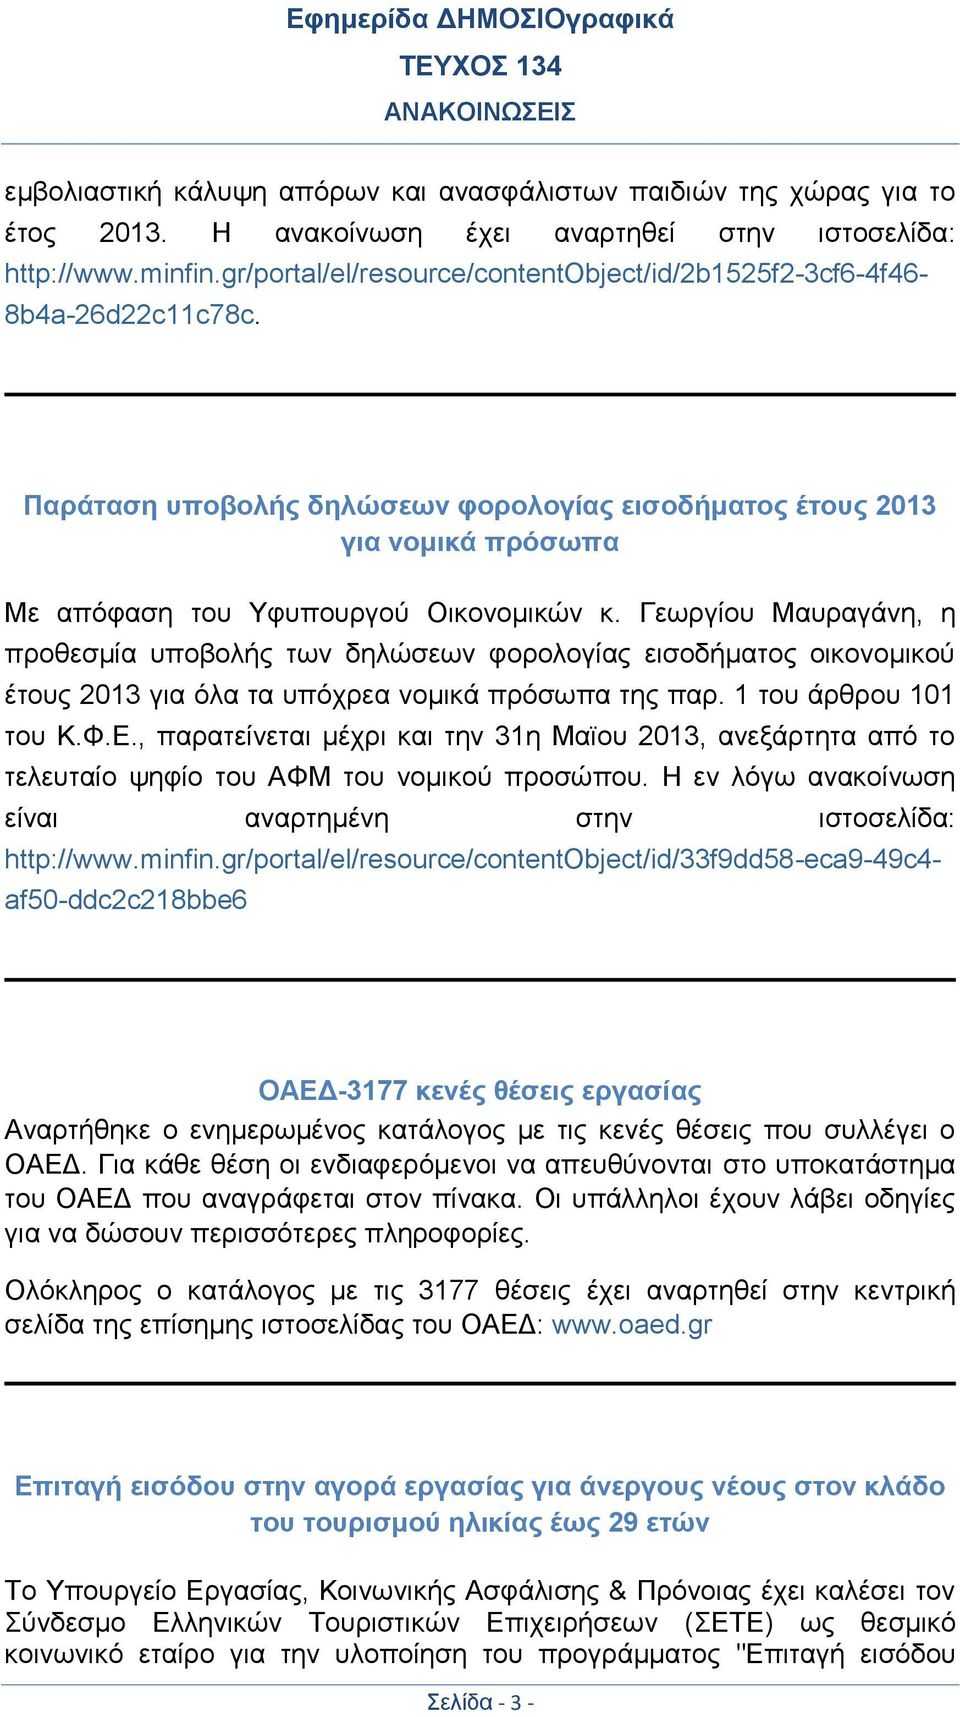 Γεωργίου Μαυραγάνη, η προθεσμία υποβολής των δηλώσεων φορολογίας εισοδήματος οικονομικού έτους 2013 για όλα τα υπόχρεα νομικά πρόσωπα της παρ. 1 του άρθρου 101 του Κ.Φ.Ε.